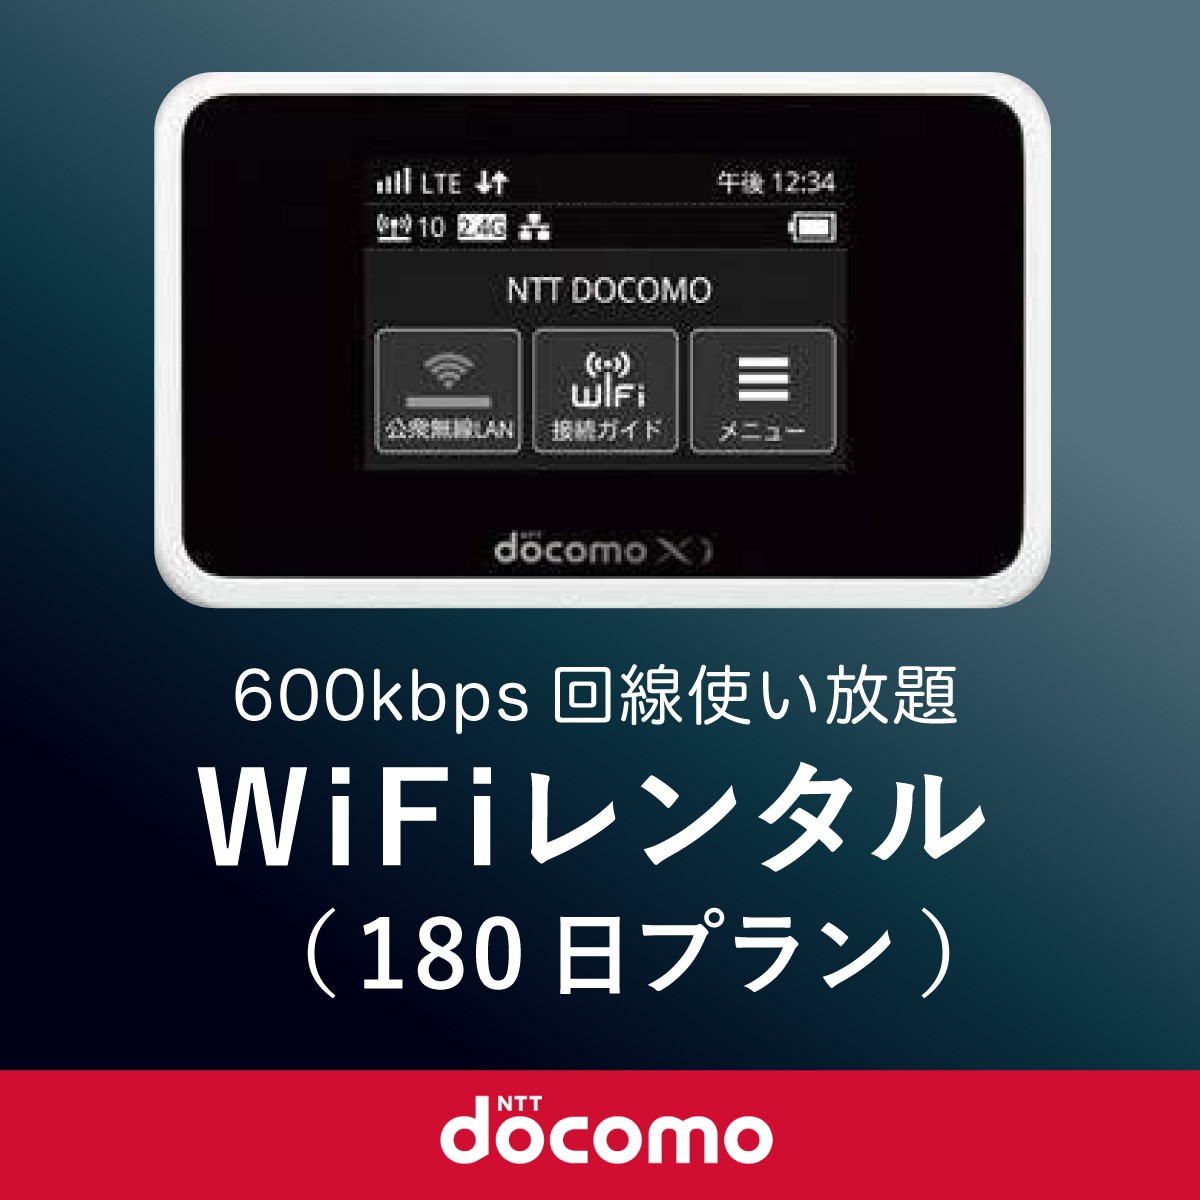  Япония внутренний для мобильный WiFi( карман wifi) в аренду 180 день ( половина год ) / DoCoMo 600kbps данные схема используя ..[ возврат включая доставку ]